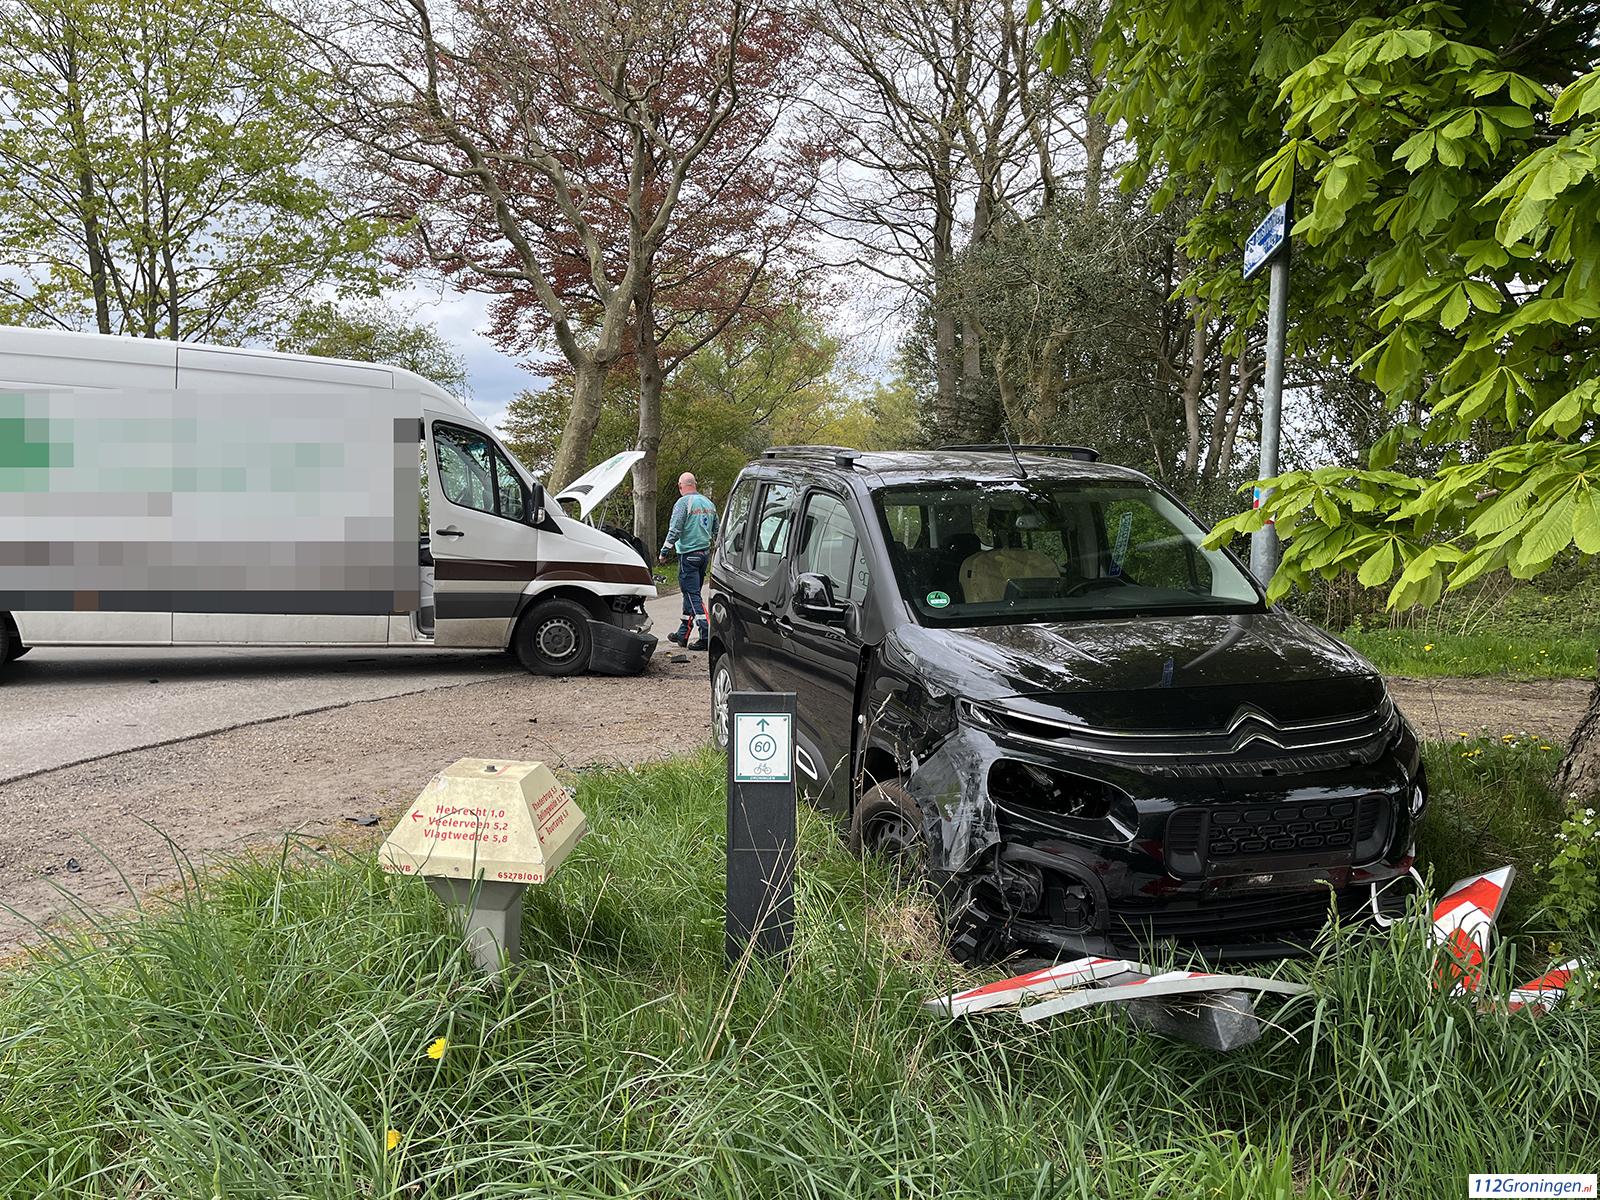 Ongeval Bourtangerweg/ H. Prinsenweg in Vlagtwedde.